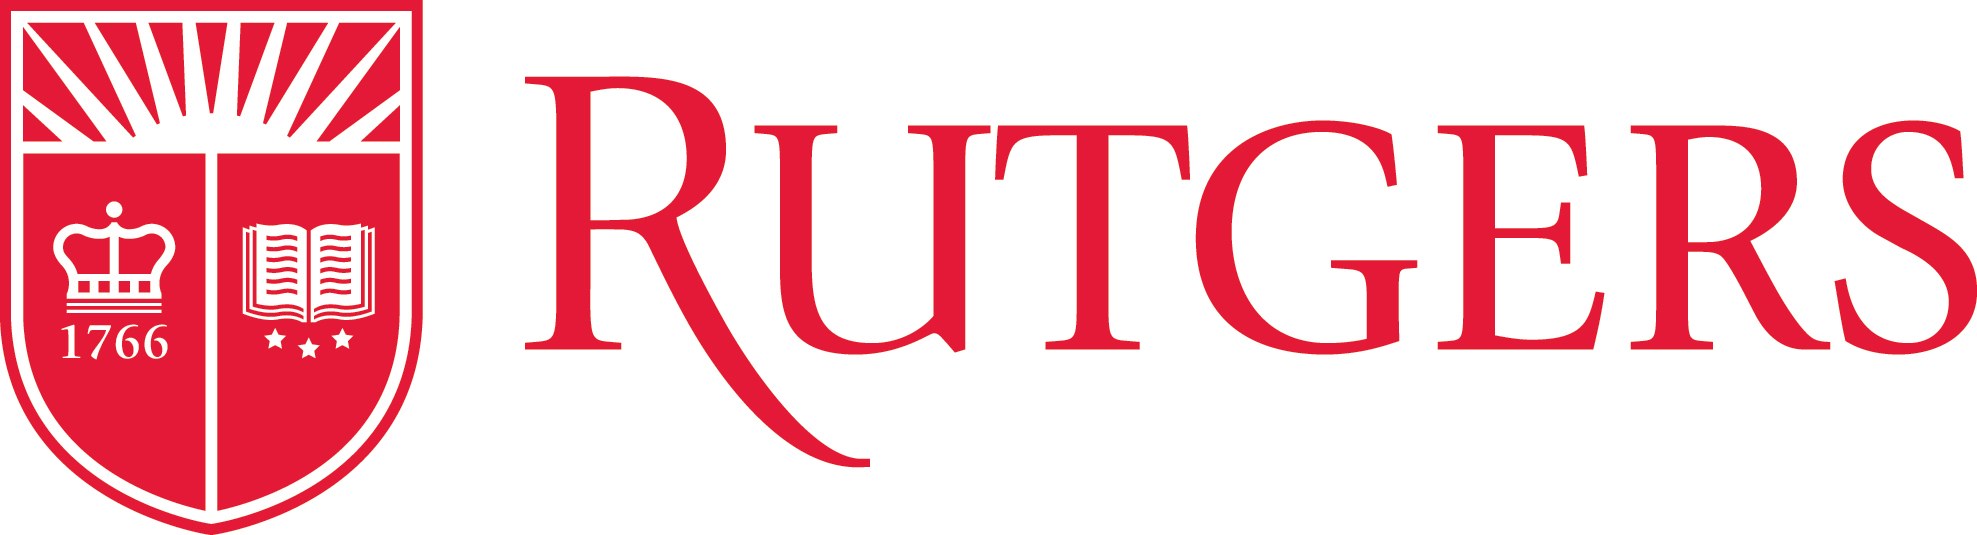 Logo-Rutgers-University.jpg